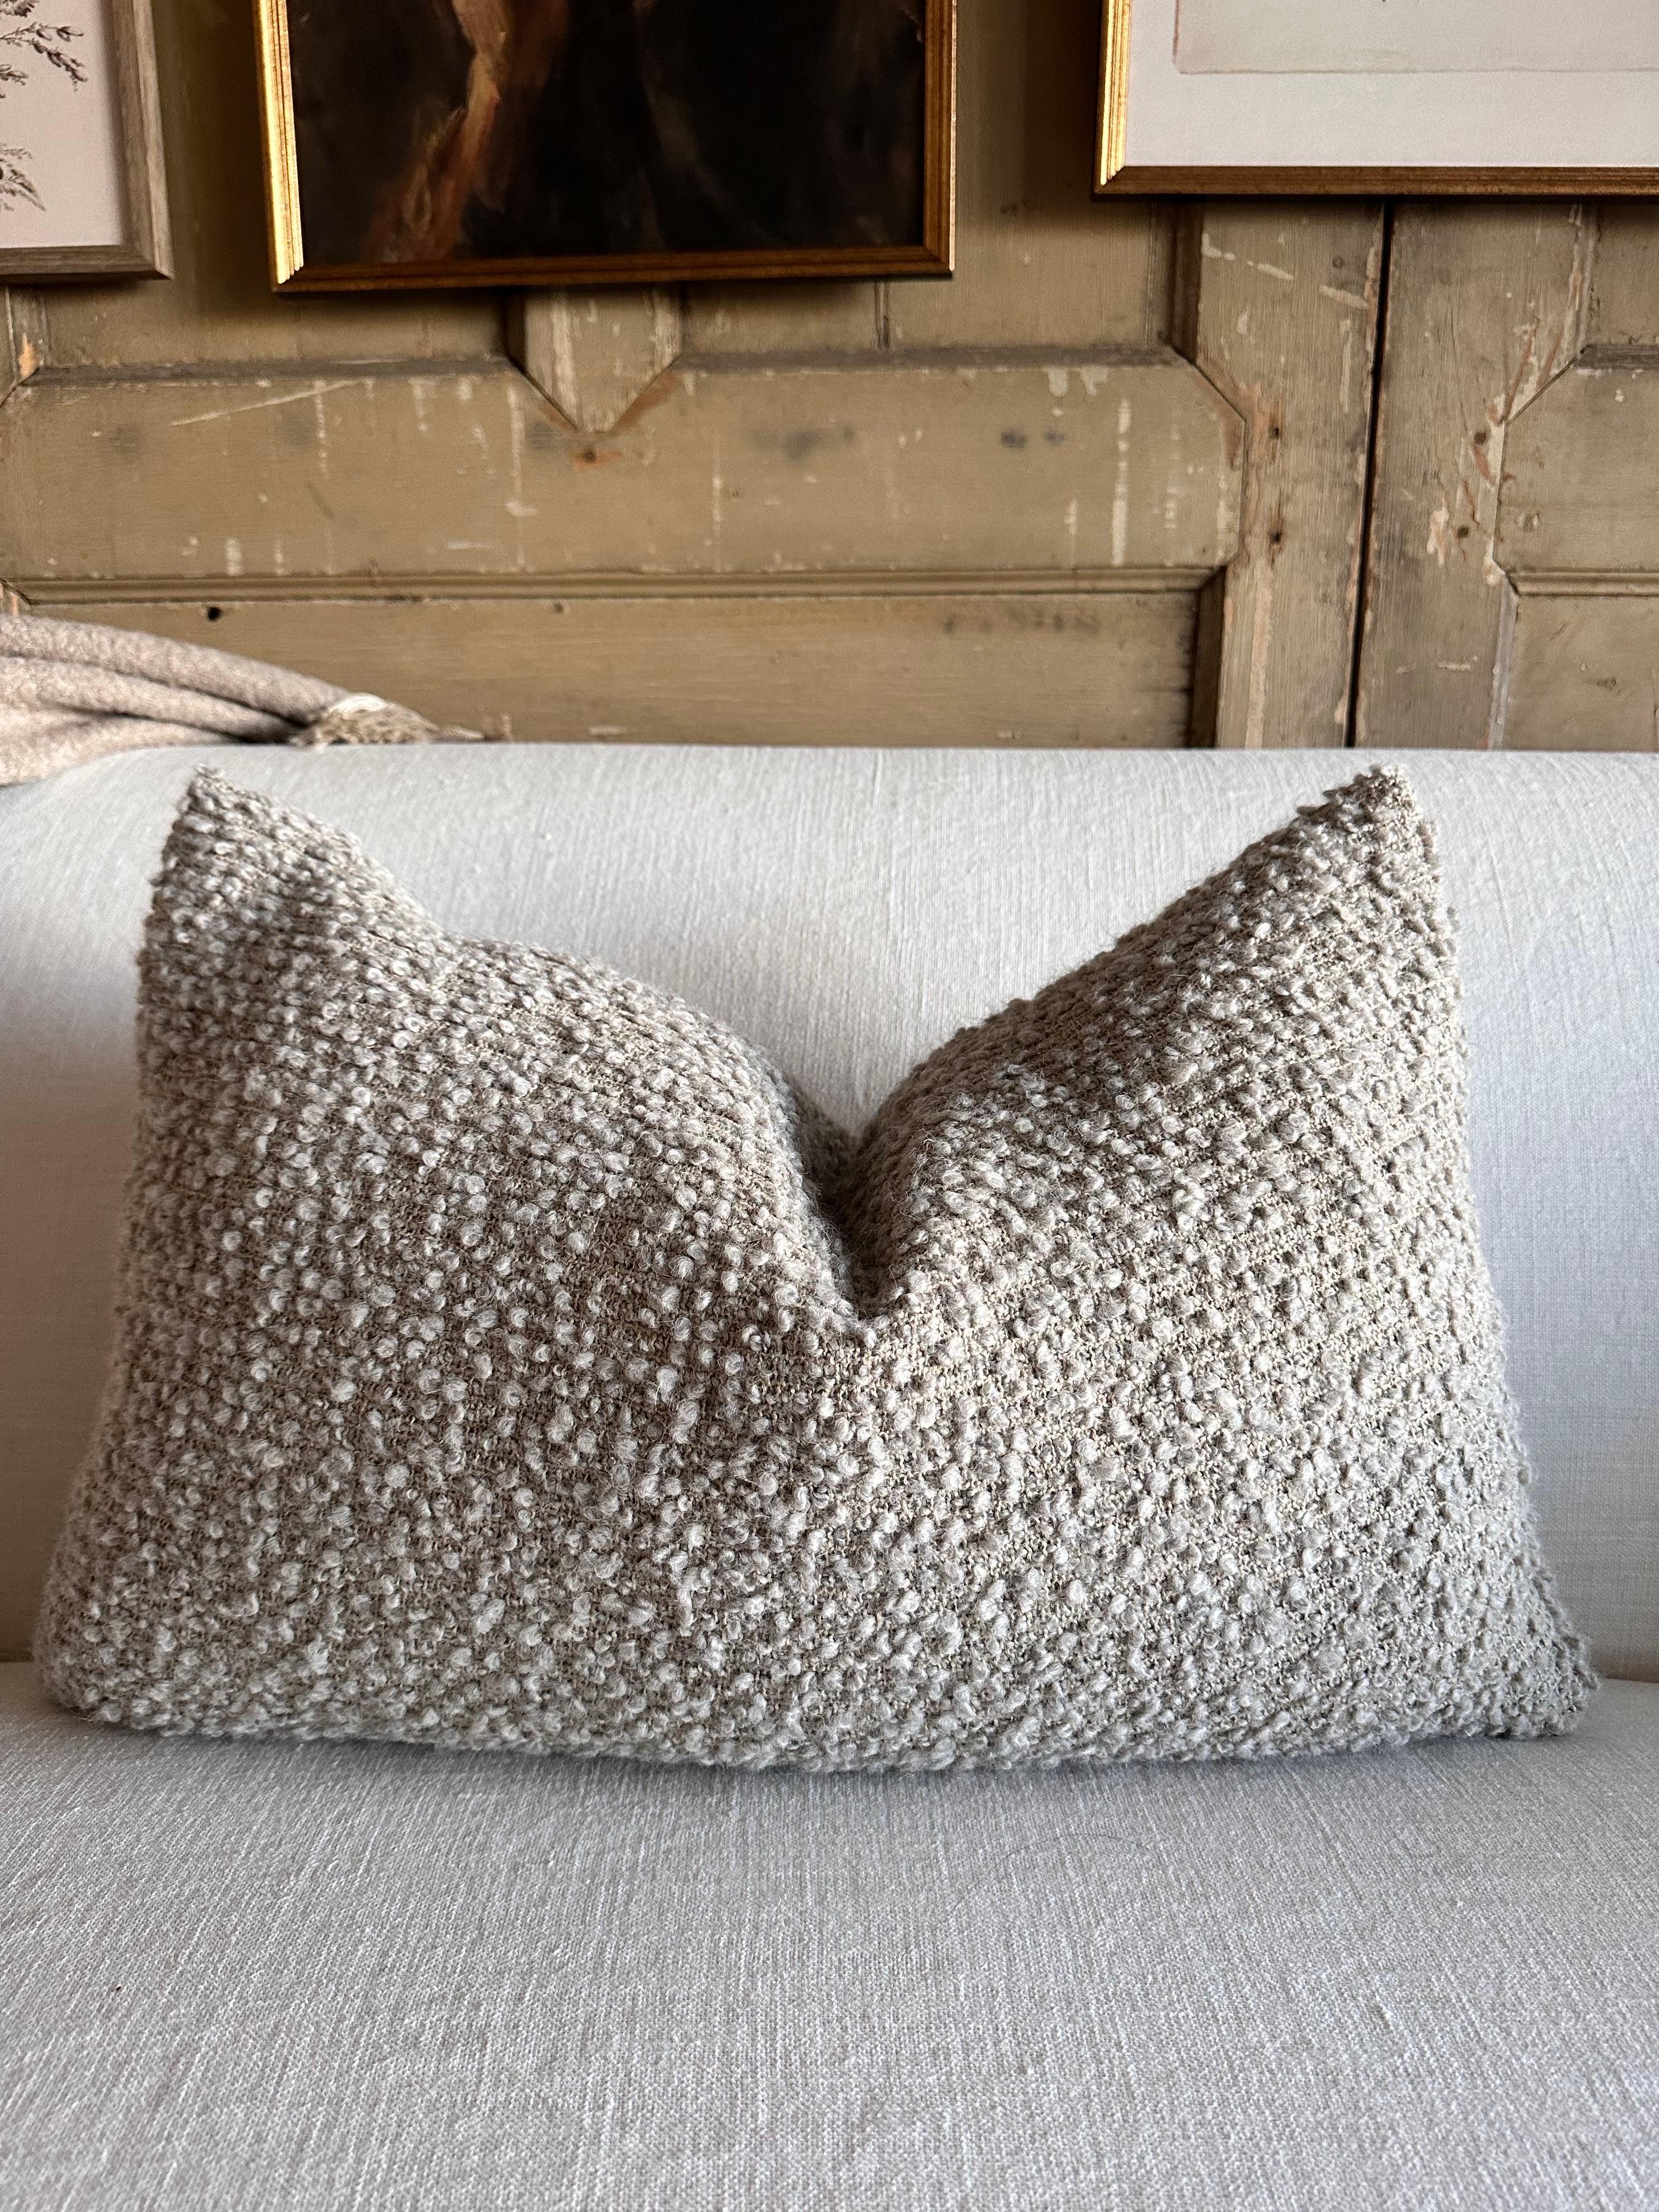 Handgewebte Wolle und Leinen Petite Lumbar Pillow
Dieses wunderschöne wolkengraue Boucle-Lumenkissen ist extrem weich und setzt einen perfekten Akzent in Ihrem Raum.
Inklusive Daunen-/Federkerneinlage
Größe: 15X24
Verschluss mit